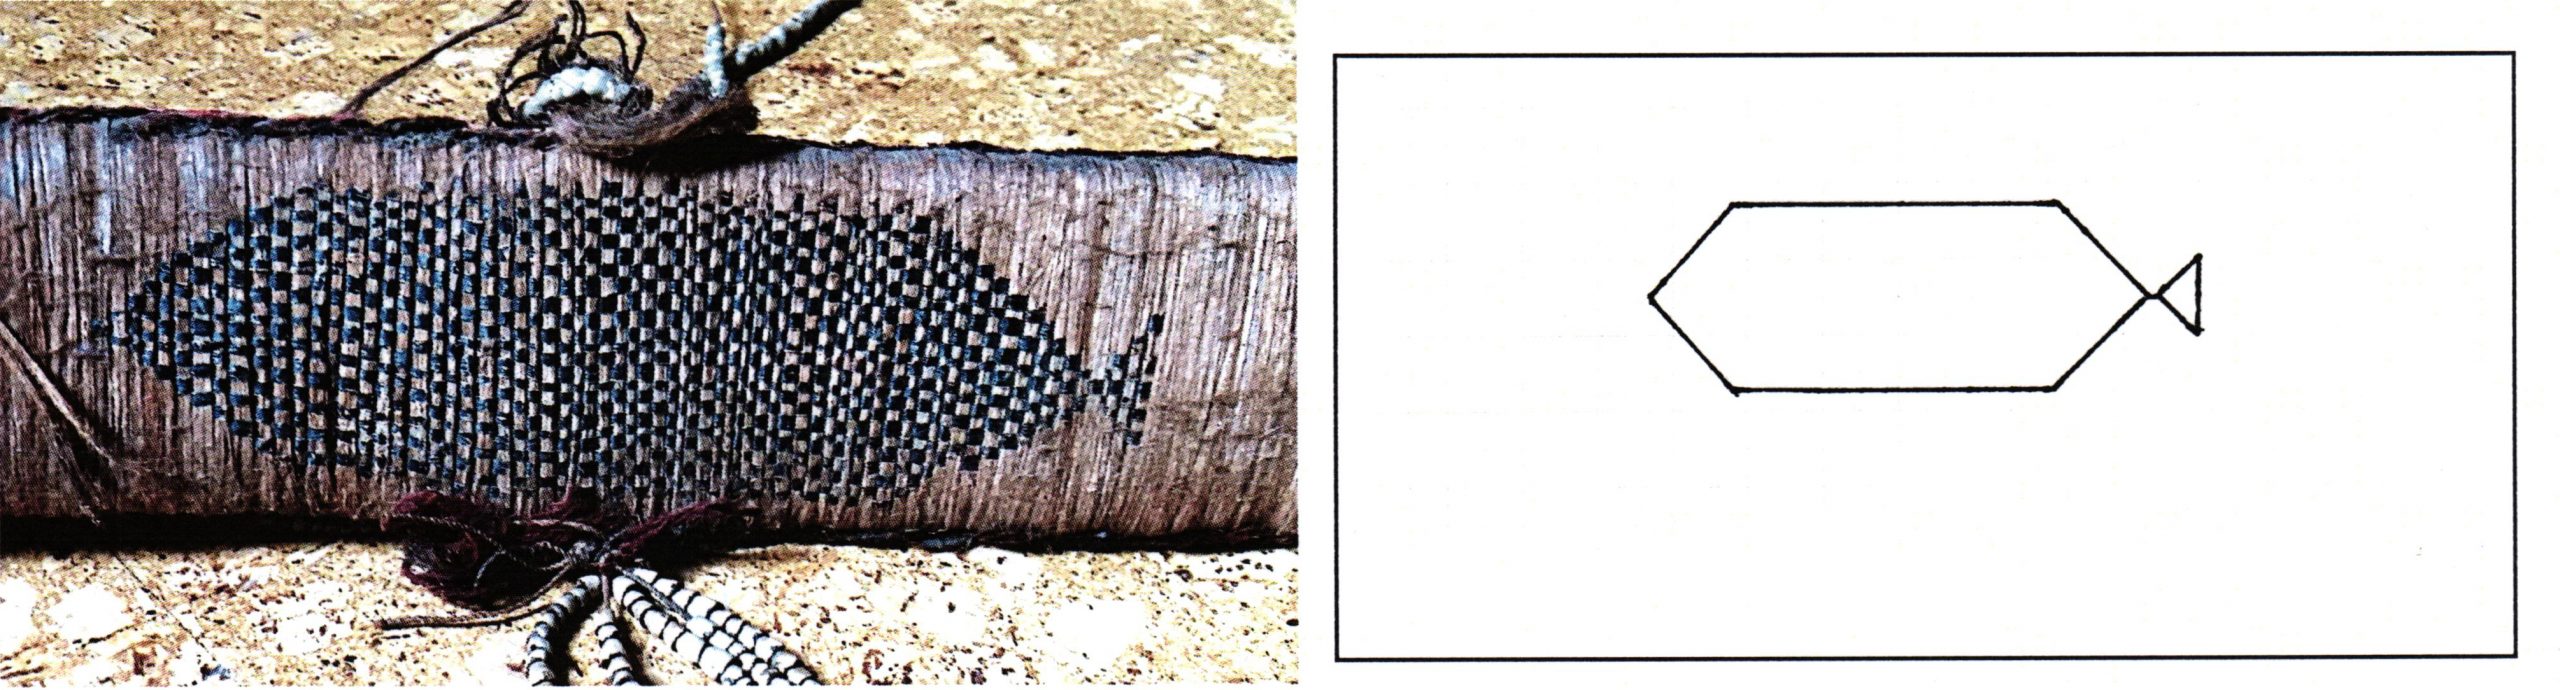 PGS 36,2 (2015) Tafel 41 Abb. 20: Federgeldrolle [EUBI]. Handwerkermarke langes Sechseck mit einseitigem Zeichen